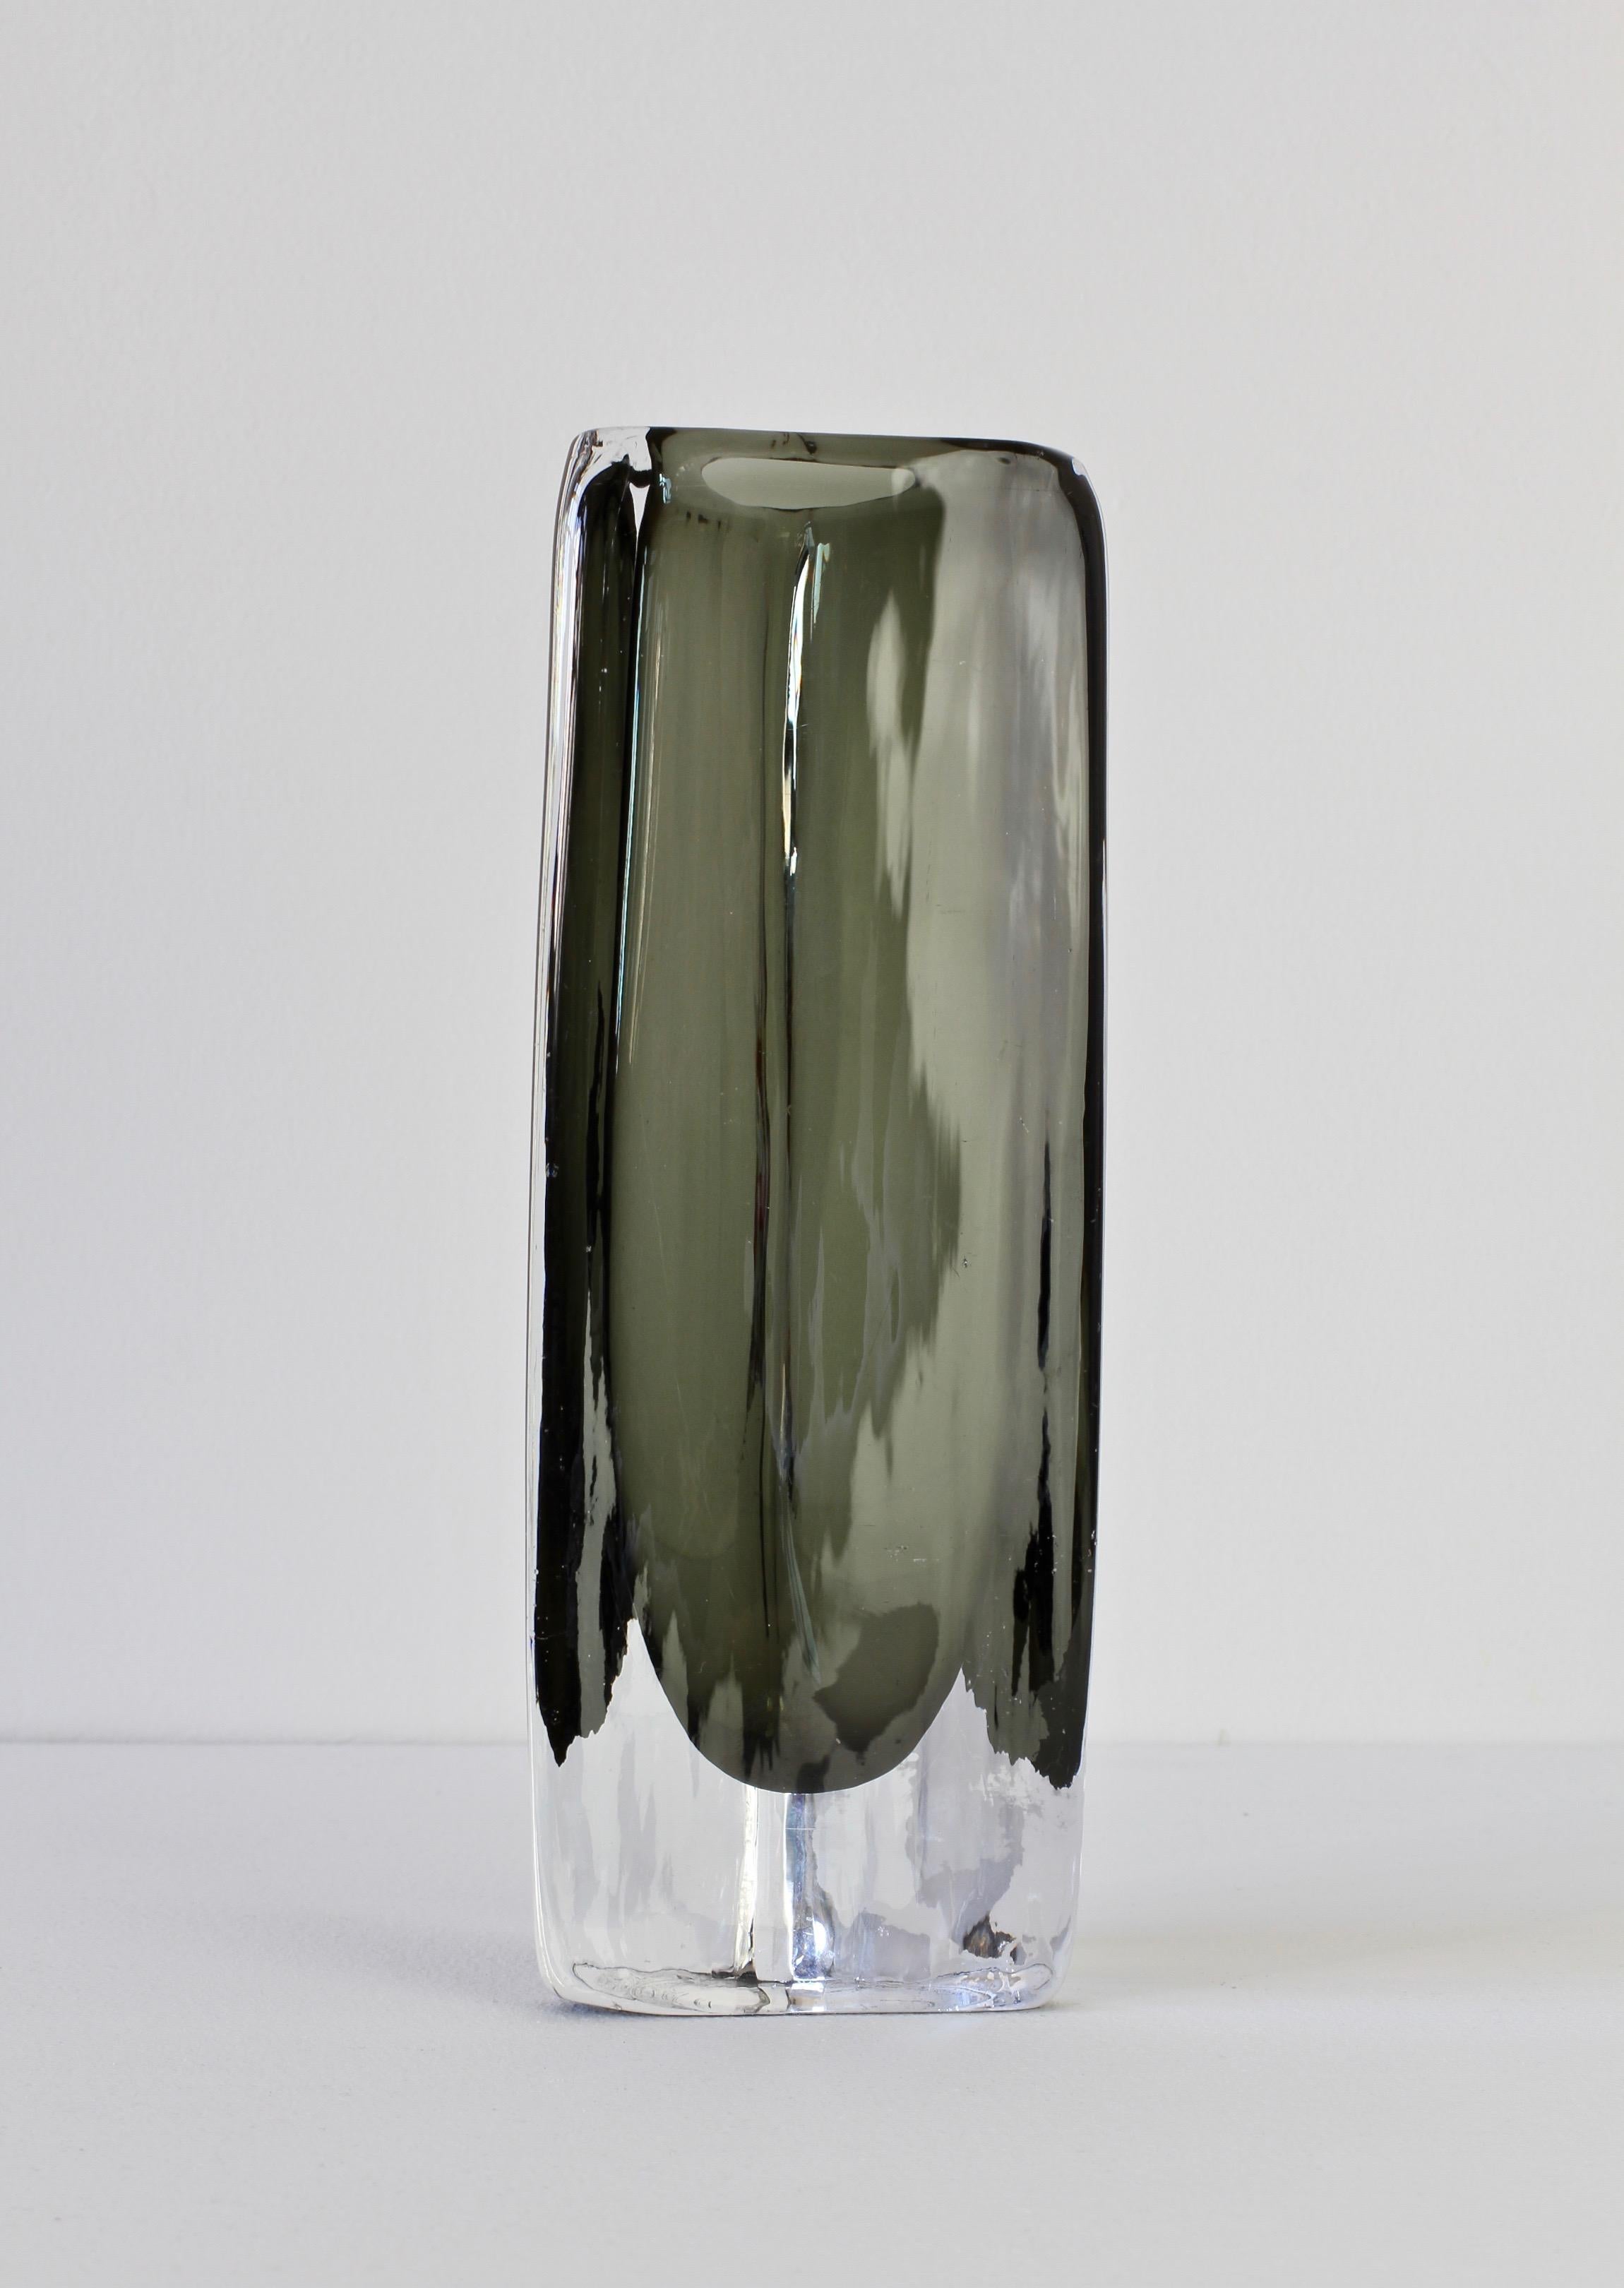 Un grand vase en cristal de Sommerso clair et aux tons fumés foncés, conçu par Nils Landberg (1907-1991) pour Orrefors Glass, Suède, vers 1950-1959. Magnifique vase de la série 